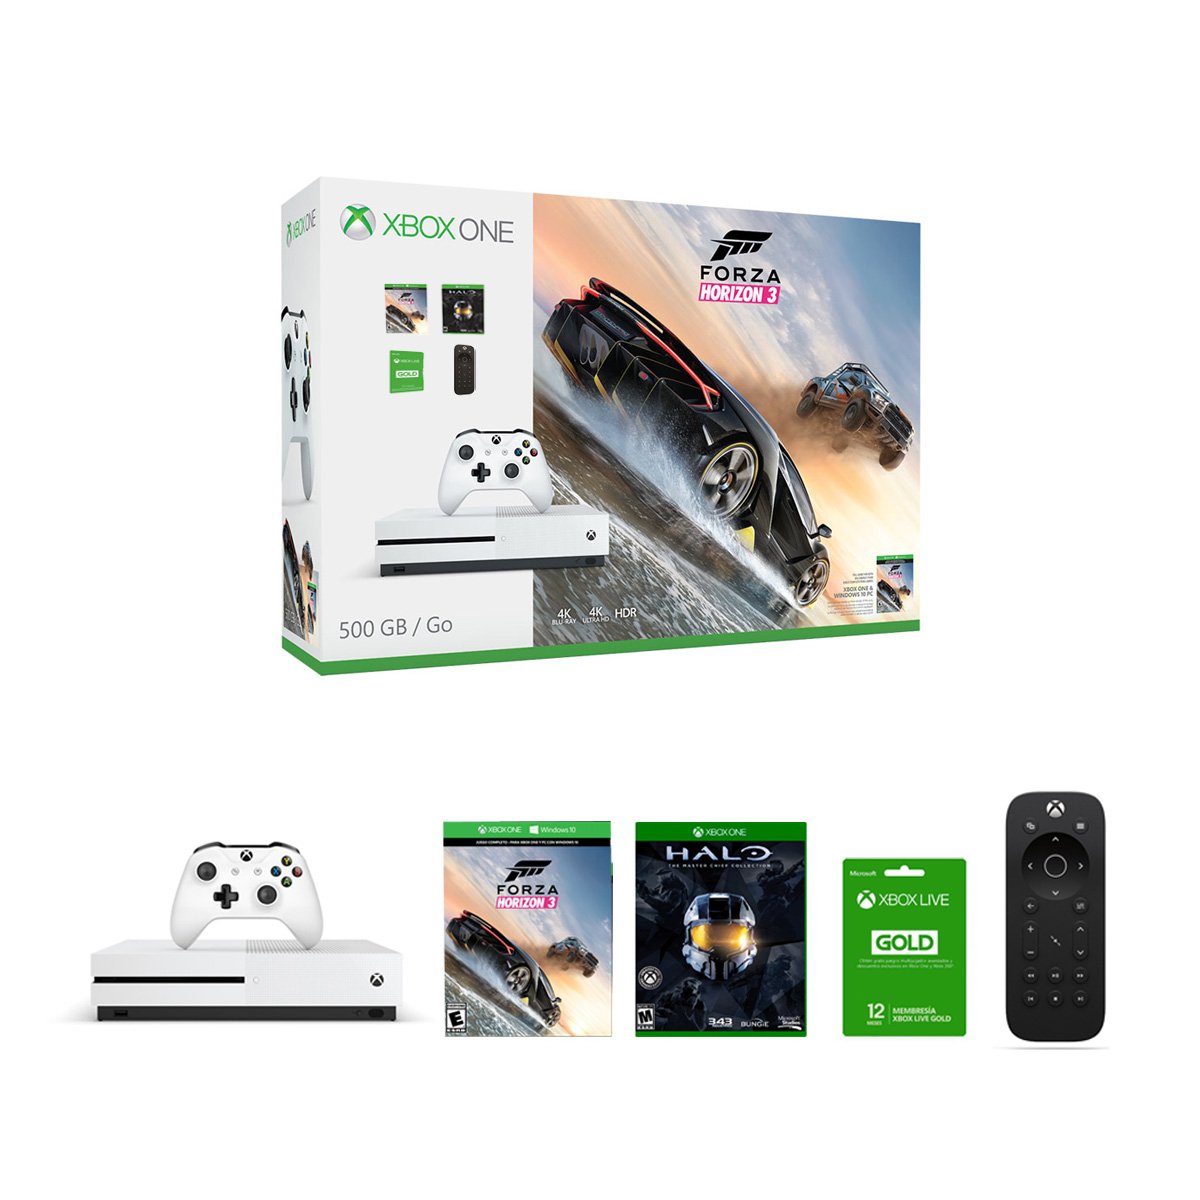 Consola Xbox One + Forza Horizon 3 + Halo Mcc + Live Gold 12M + Media Remote